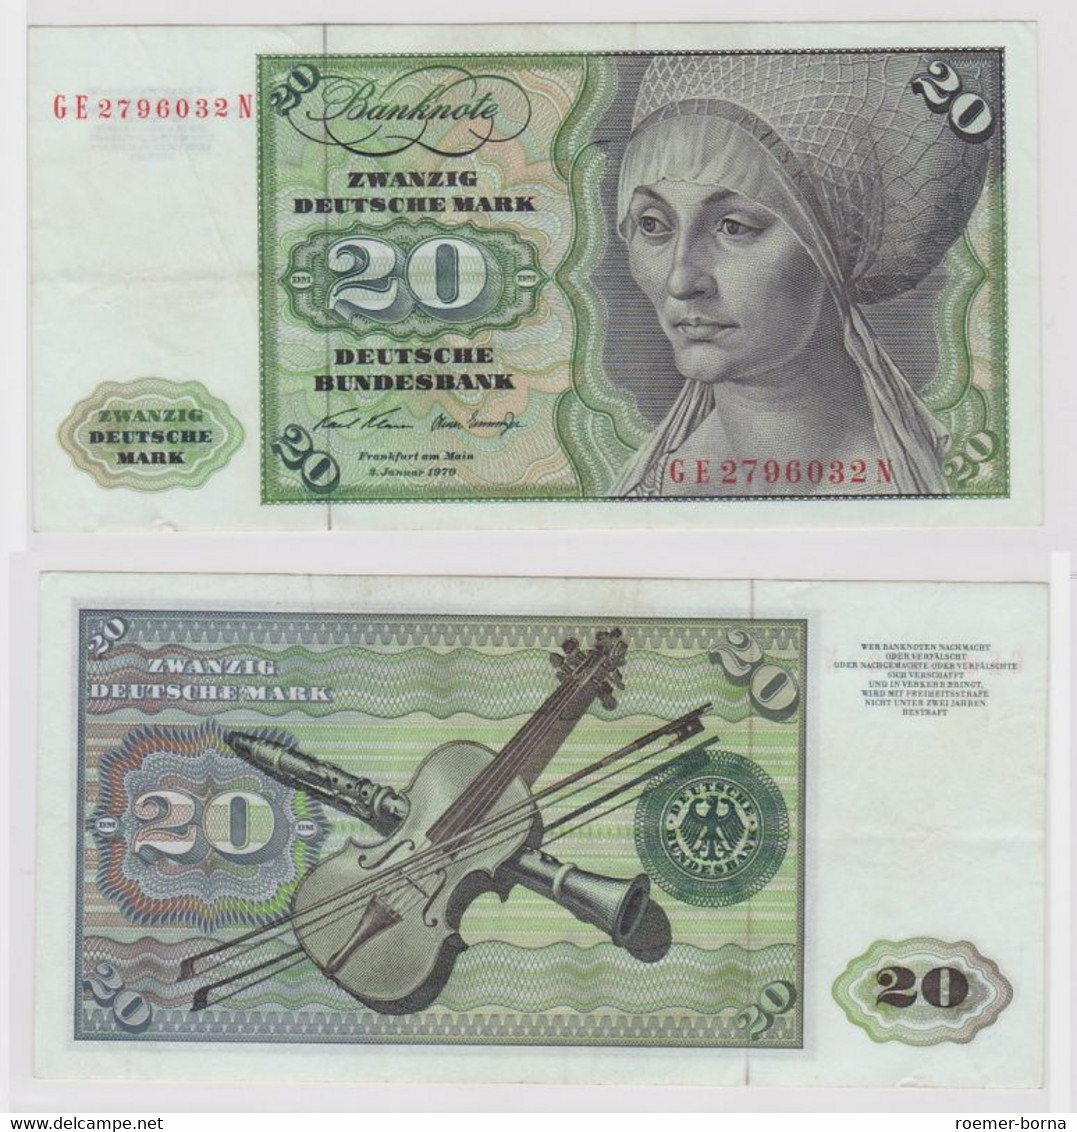 T148113 Banknote 20 DM Deutsche Mark Ro. 271b Schein 2.Jan. 1970 KN GE 2796032 N - 20 Deutsche Mark